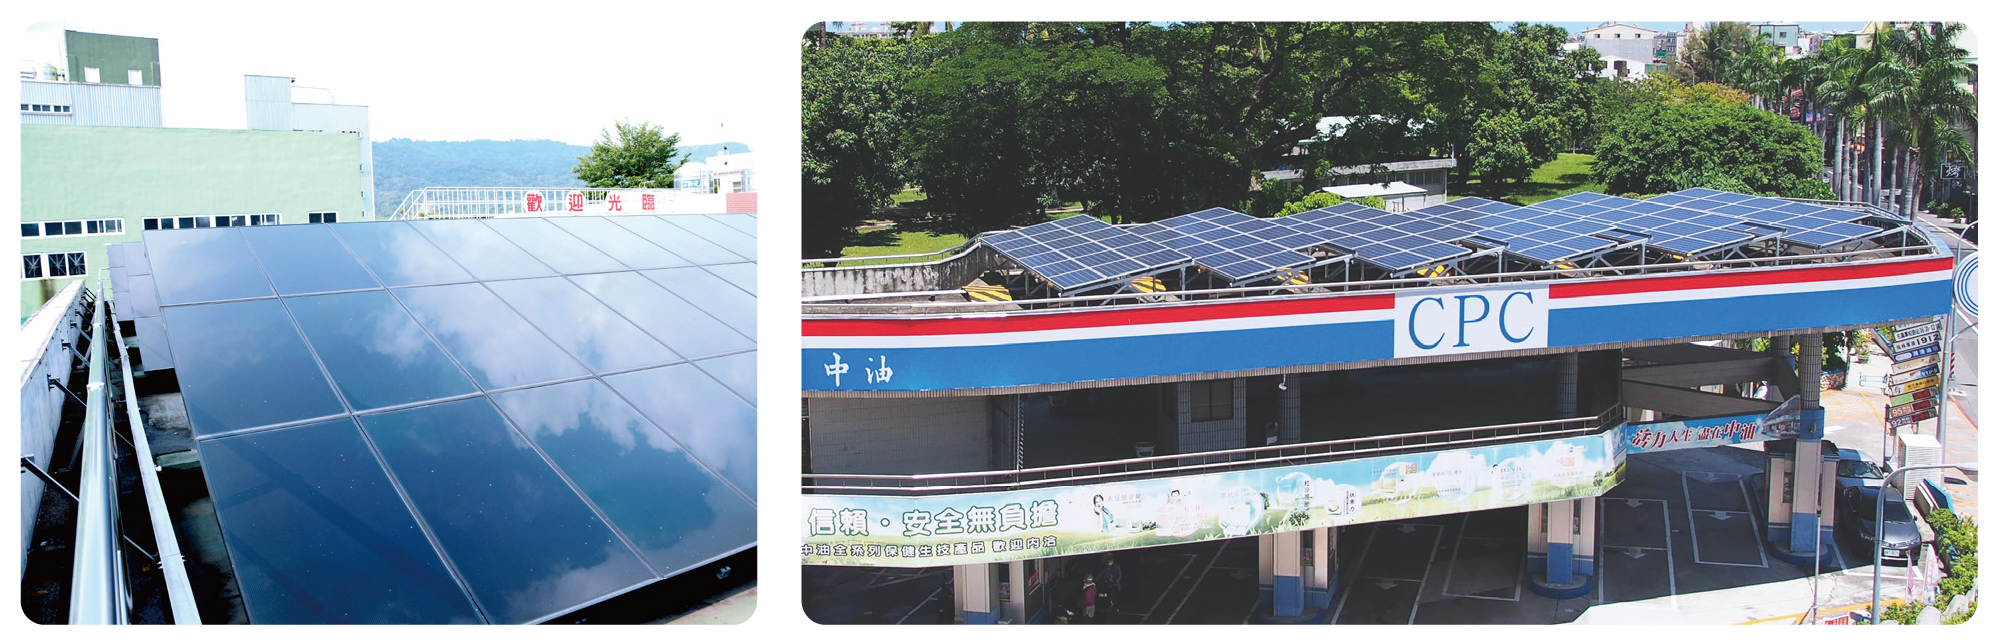 加油站屋頂設置太陽能發電系統